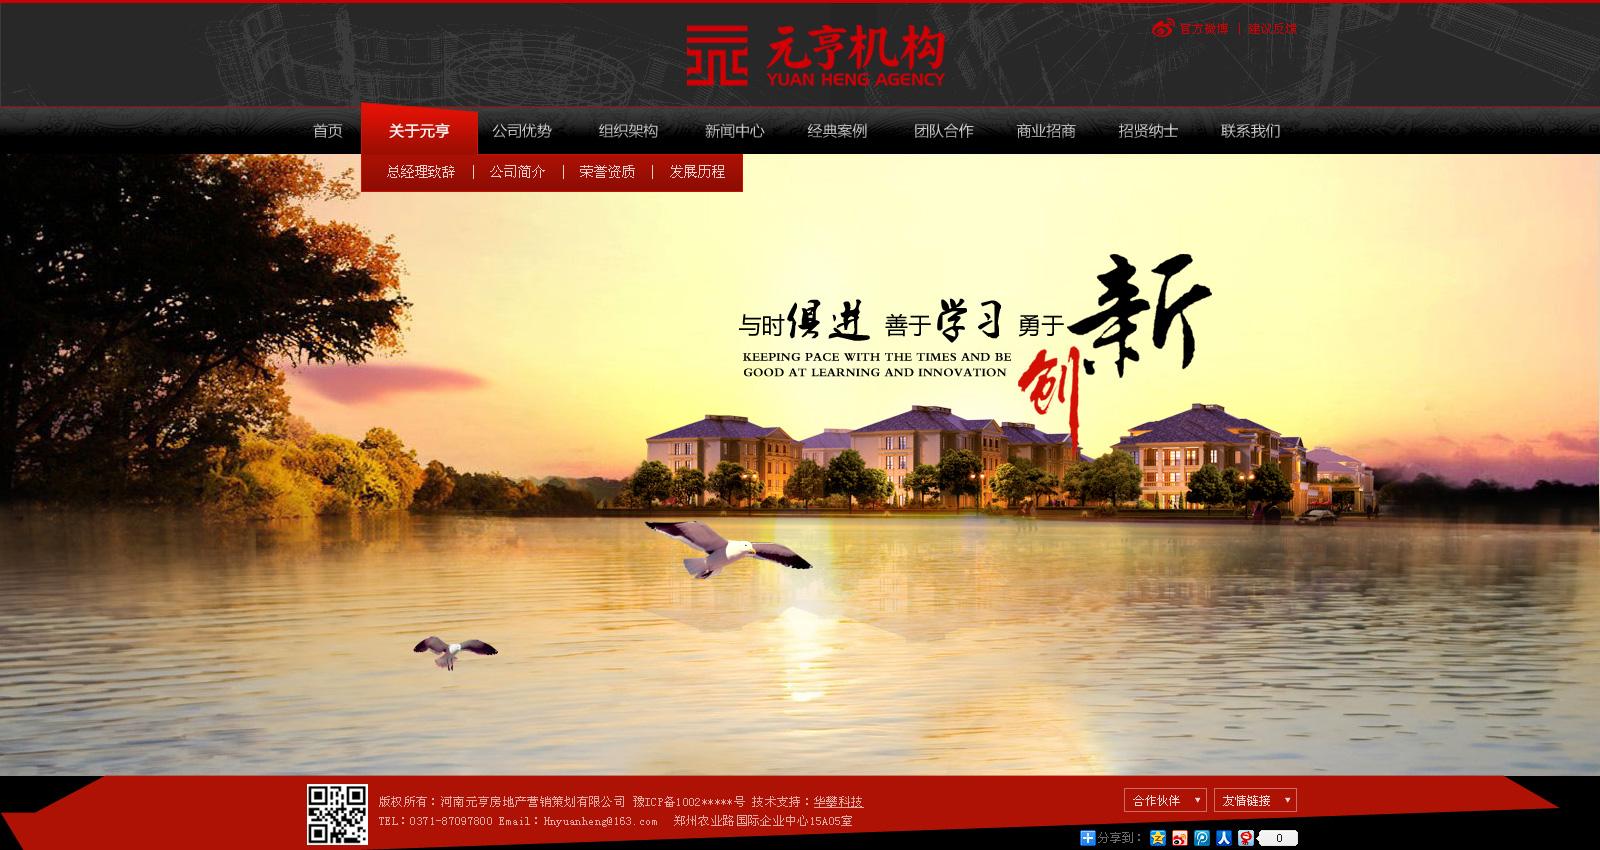 河南元亨房地产营销策划有限公司网站设计效果图效果图